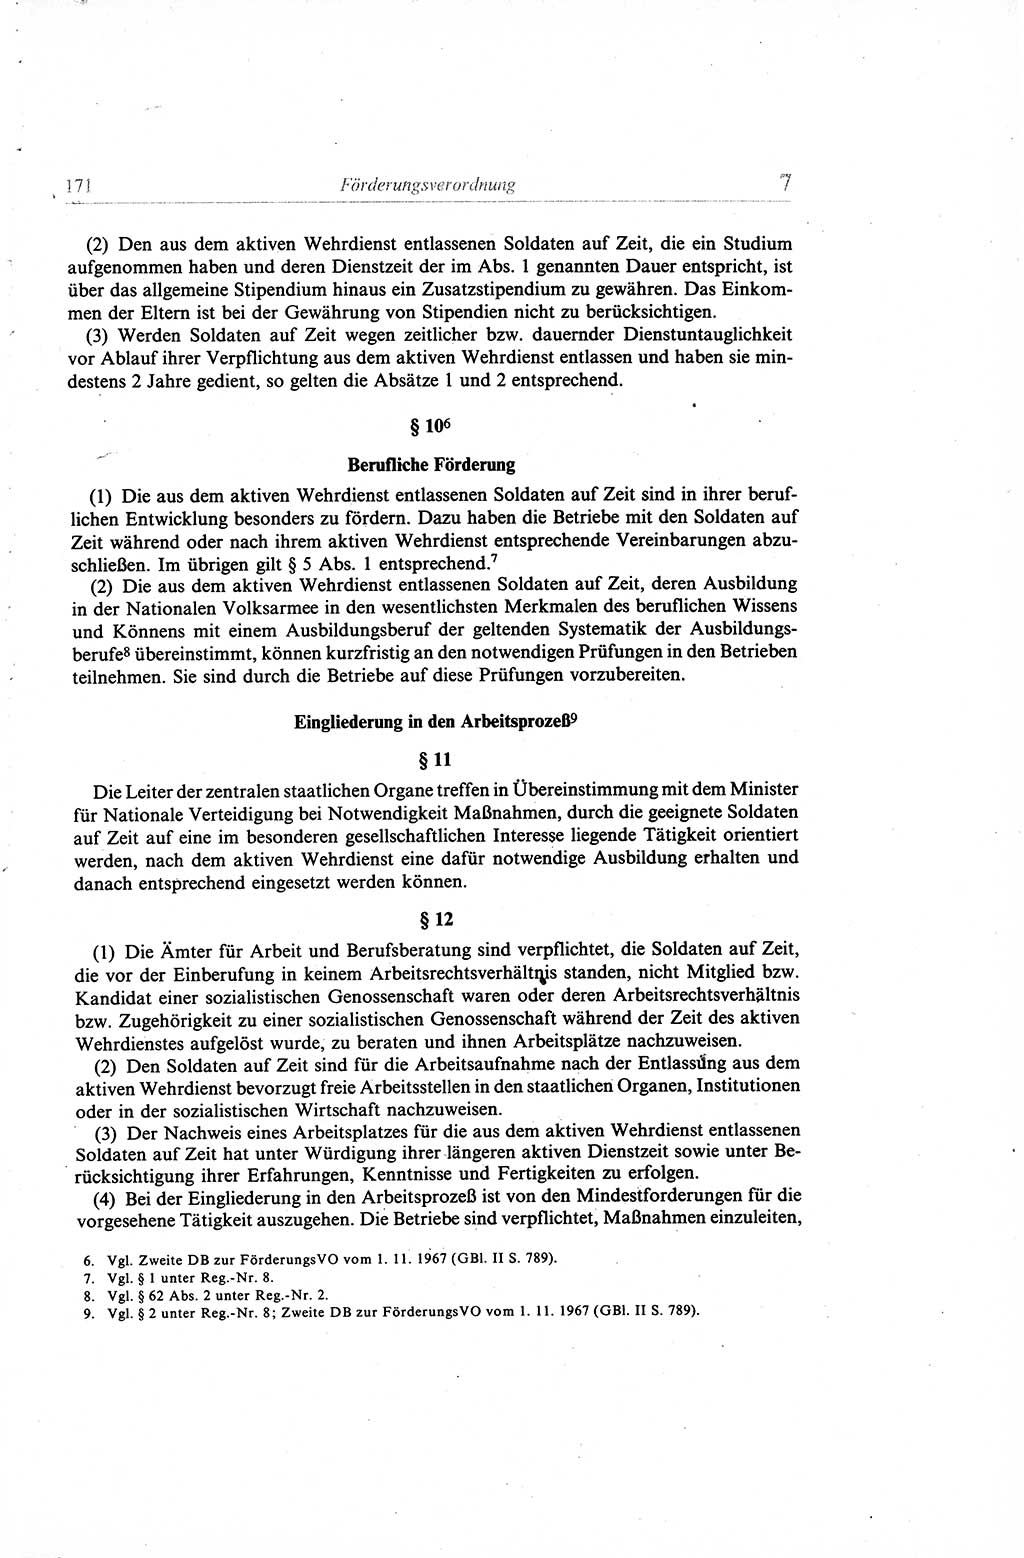 Gesetzbuch der Arbeit (GBA) und andere ausgewählte rechtliche Bestimmungen [Deutsche Demokratische Republik (DDR)] 1968, Seite 171 (GBA DDR 1968, S. 171)